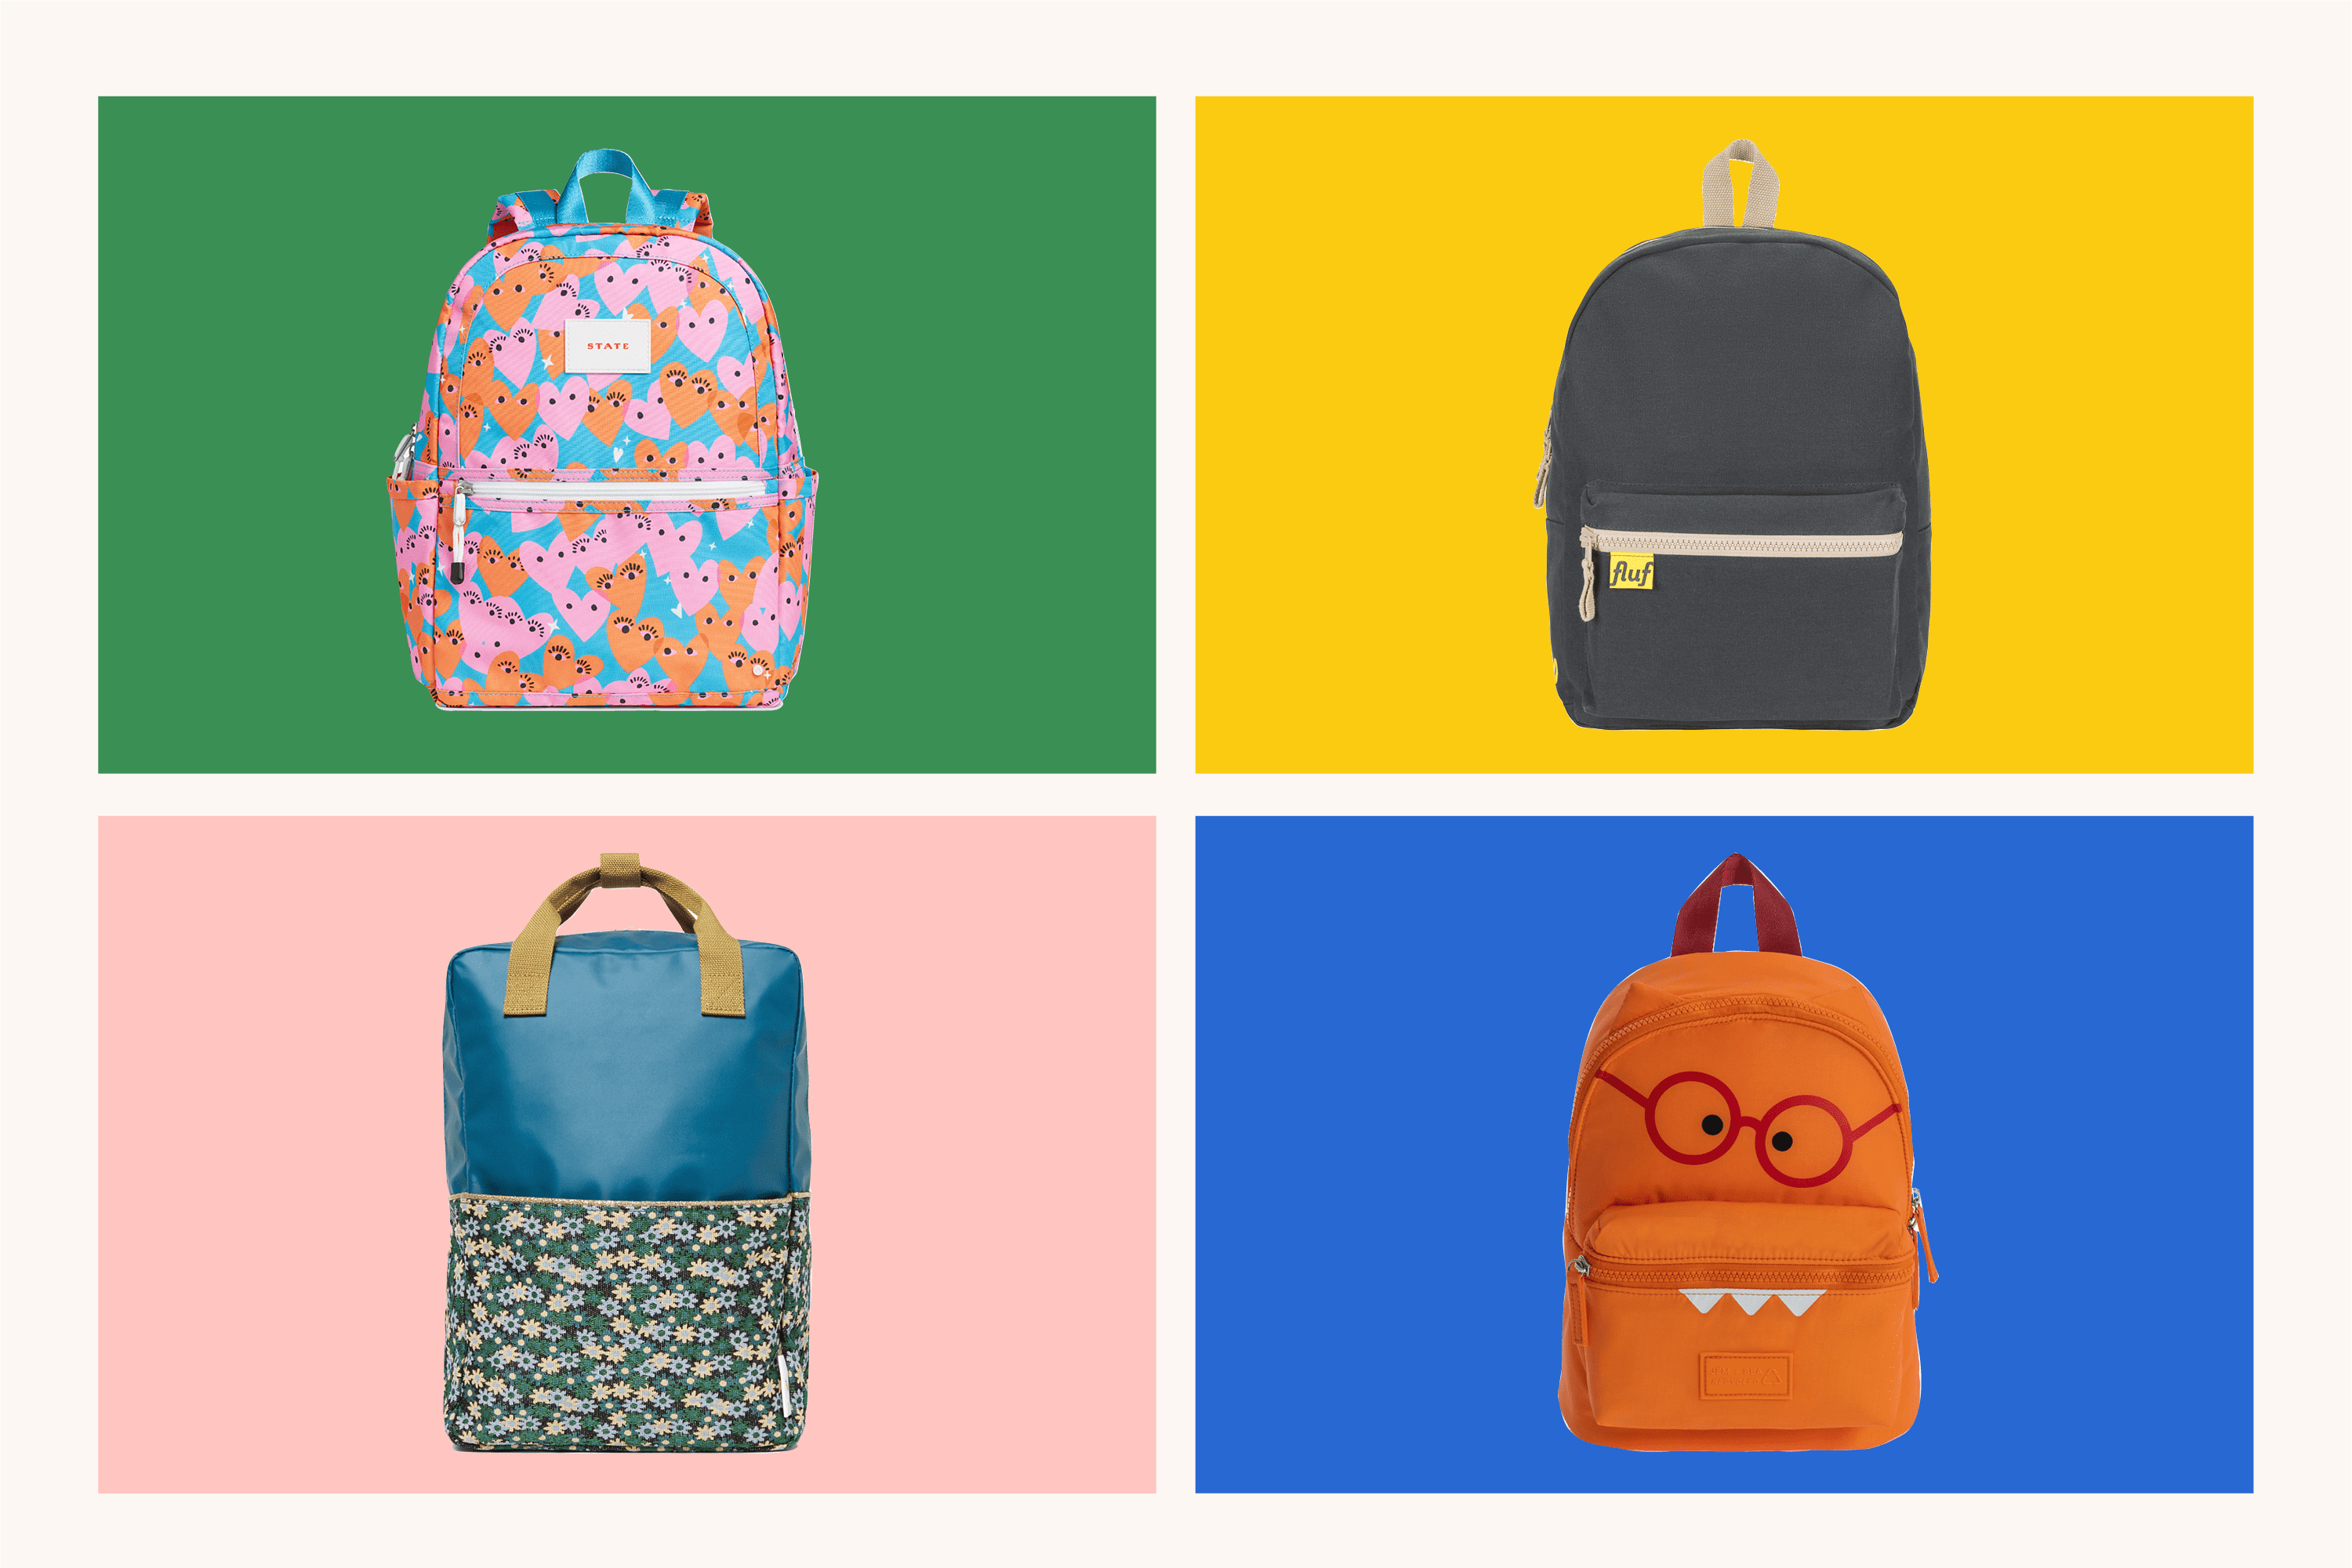 Shark Backpacks for Teen Boys, Cool Kids Backpack for School Bookbags (Glow)